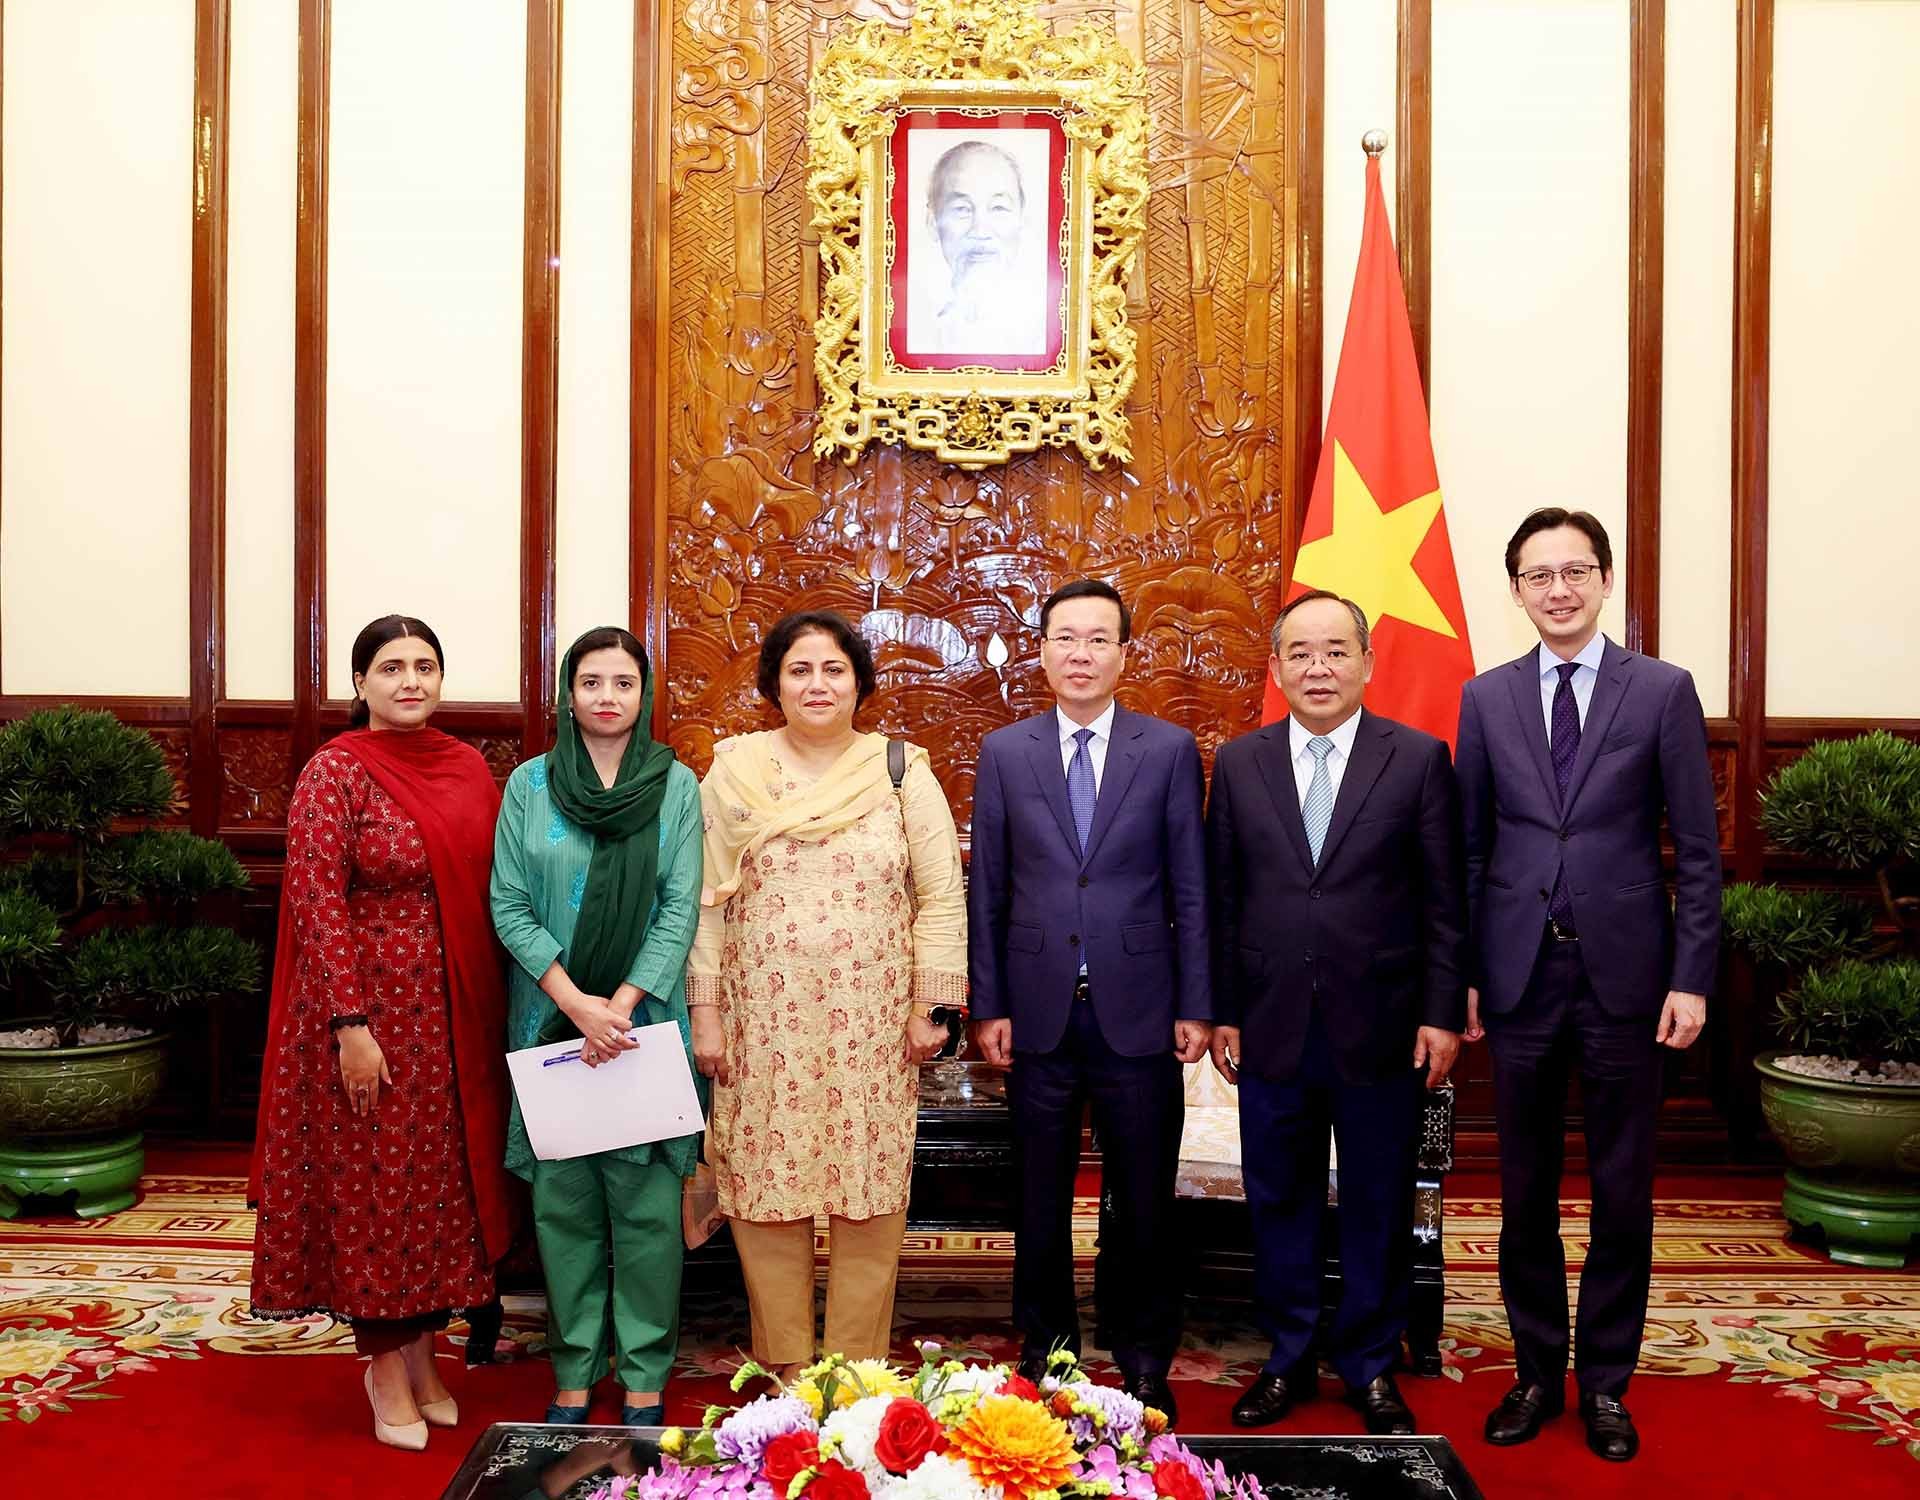 Chủ tịch nước Võ Văn Thưởng tiếp Đại sứ Pakistan chào từ biệt, kết thúc nhiệm kỳ công tác tại Việt Nam